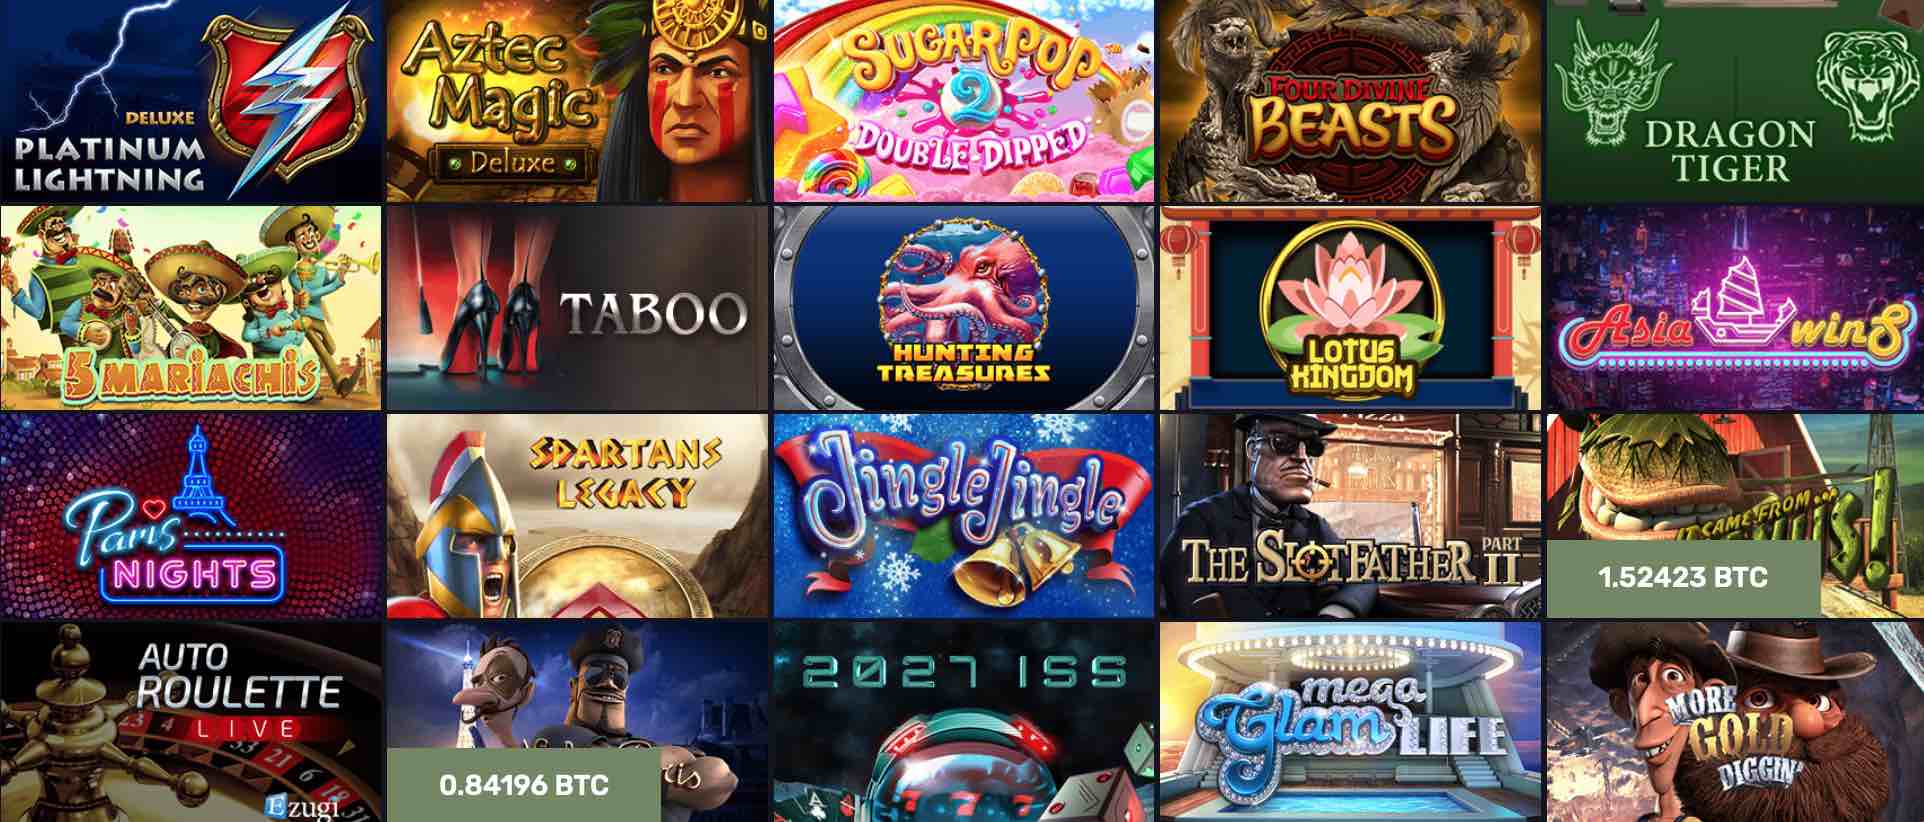 Free bitcoin casino games r